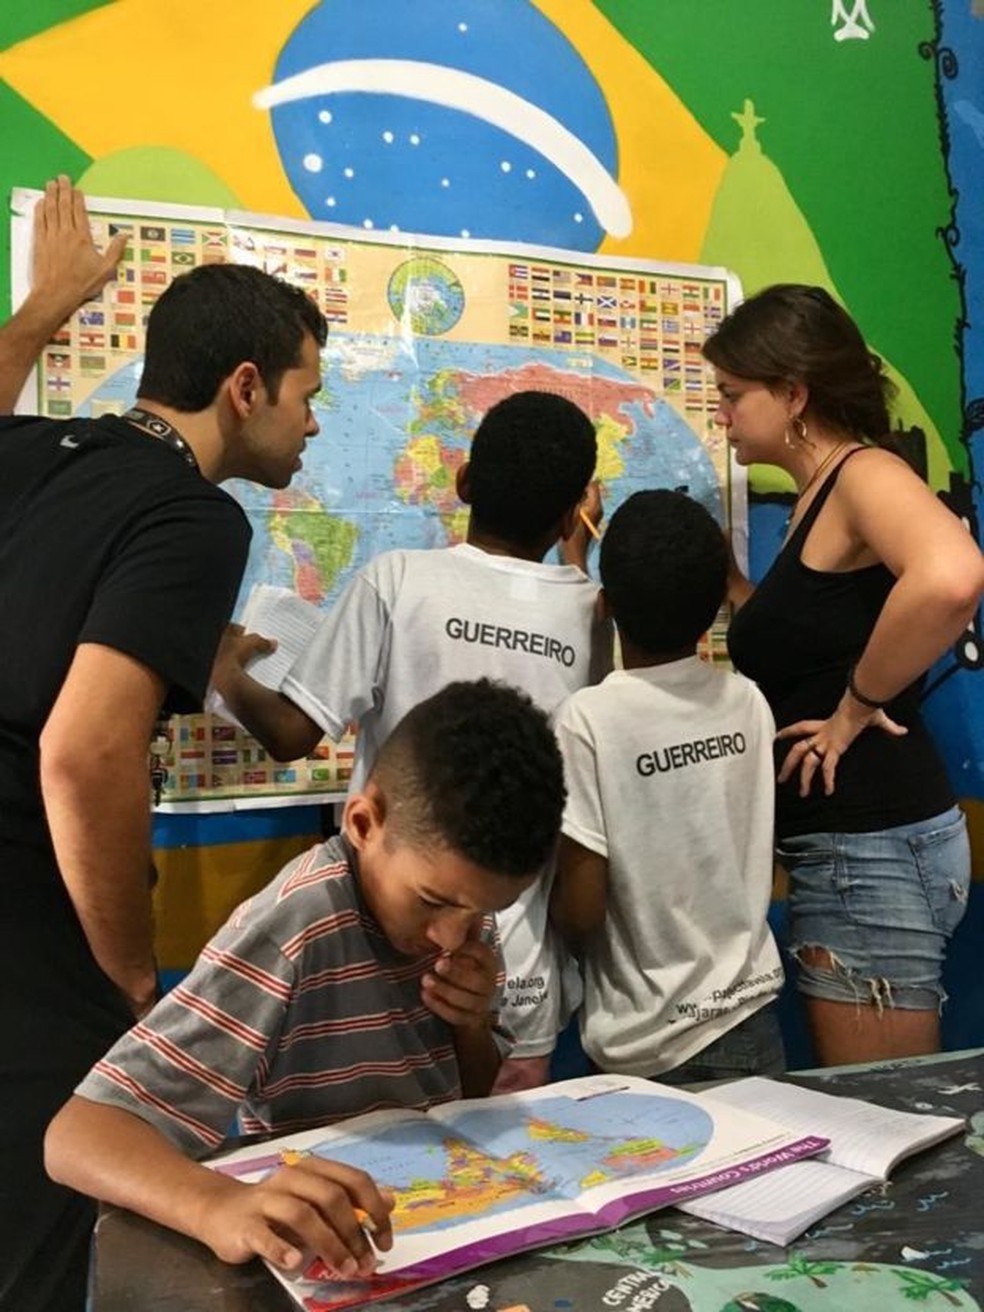 Aulas de geografia estÃ£o entre as que o projeto no Rio de Janeiro oferece a crianÃ§as brasileiras â€” Foto: Milene Fernandes/Projeto favela